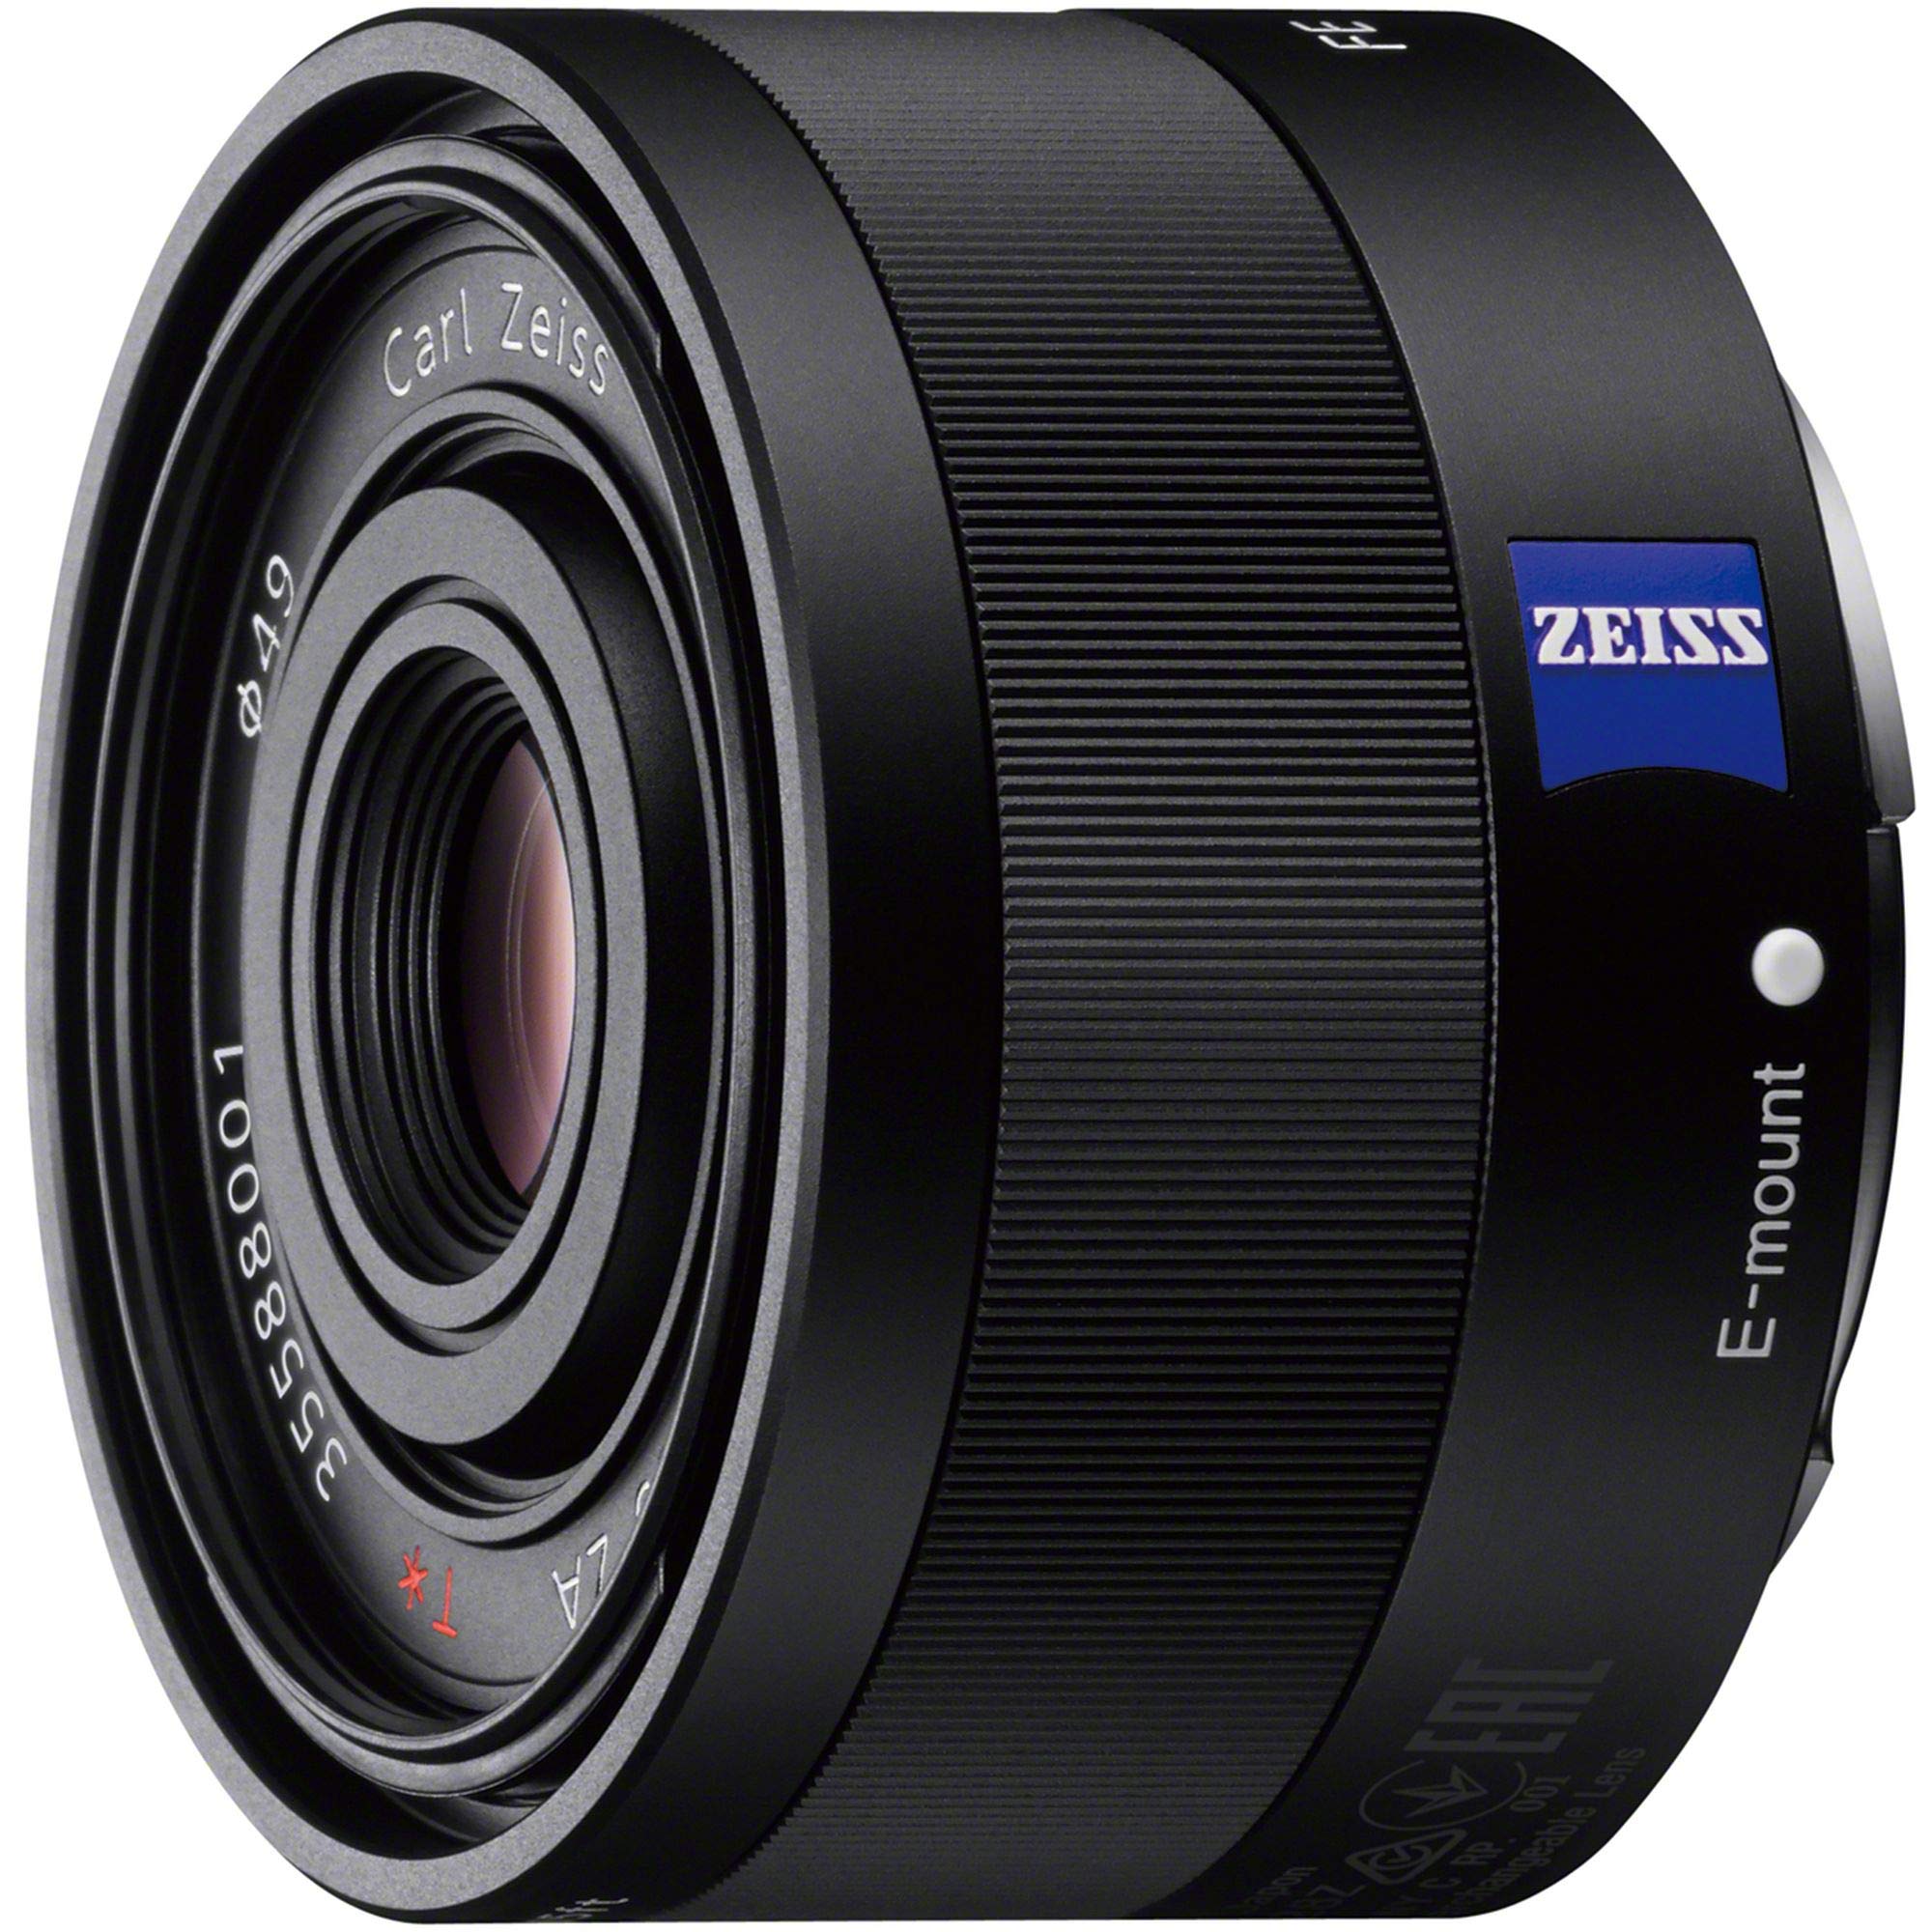 ソニー 広角単焦点レンズ フルサイズ Sonnar T* FE 35mm F2.8 ZA ツァイスレンズ デジタル一眼カメラα[Eマウント]用 純正レンズ SEL35F2